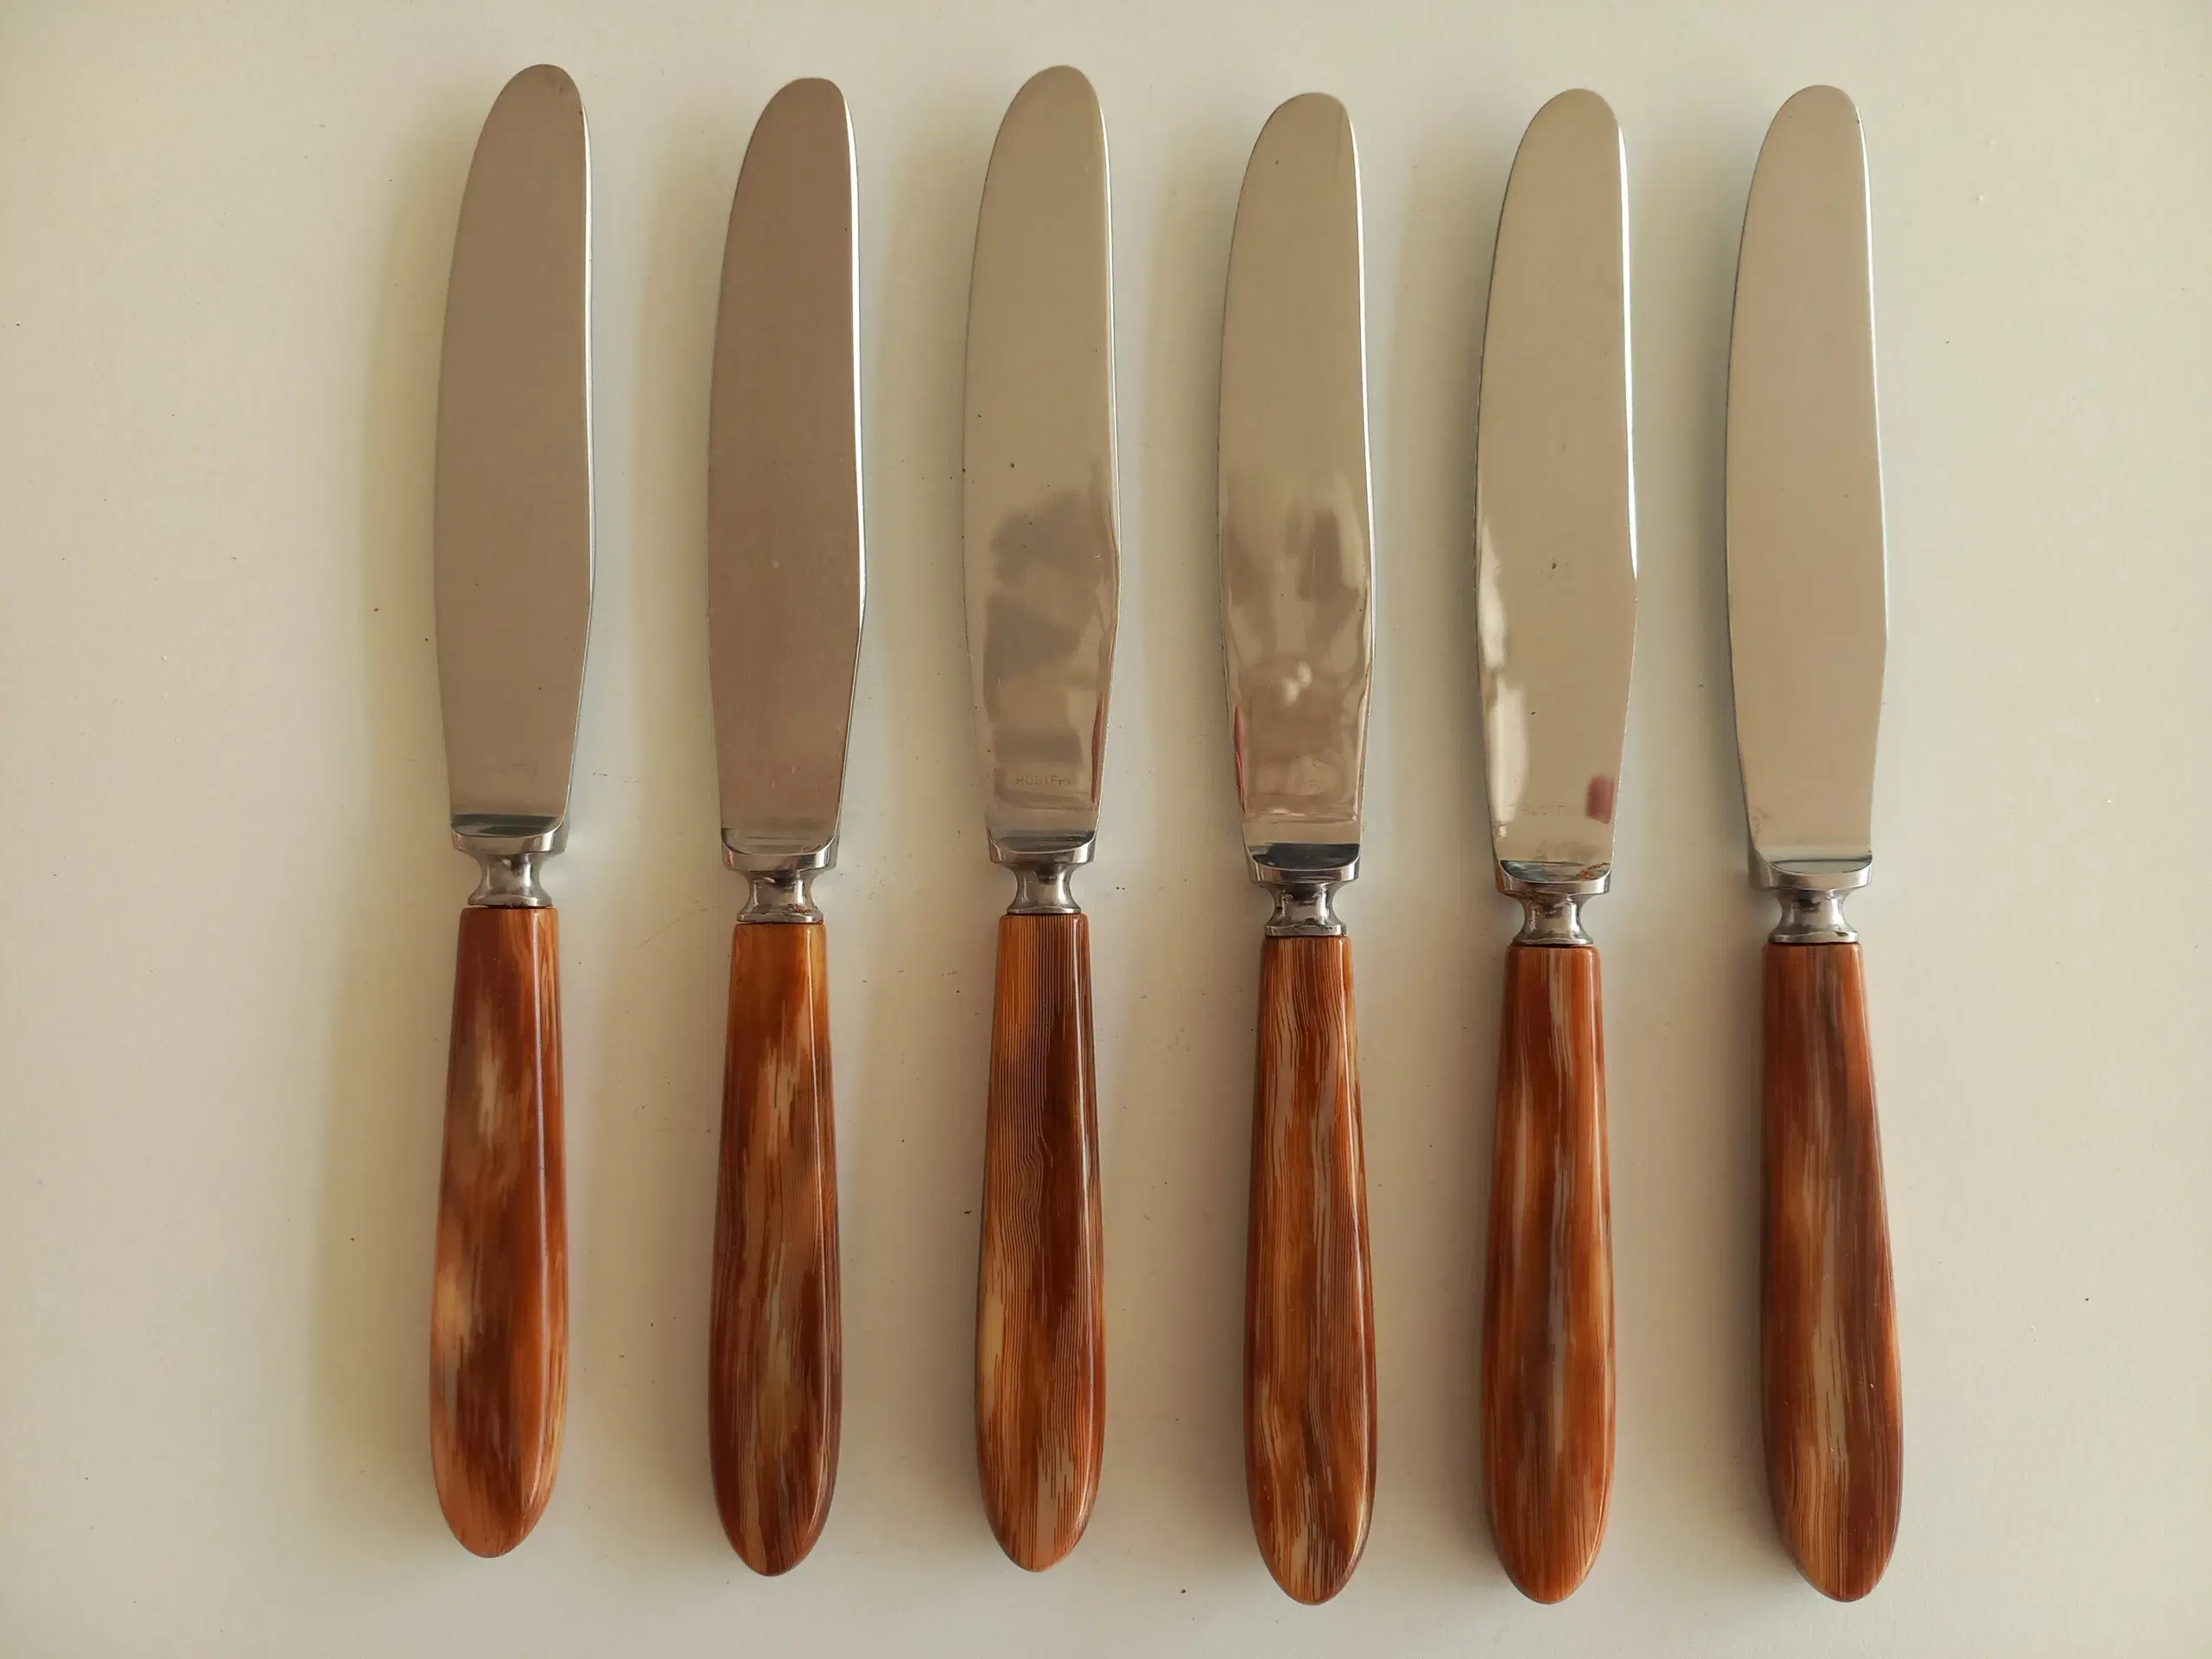 Raadvad bestik knive og gafler med brunt skaft